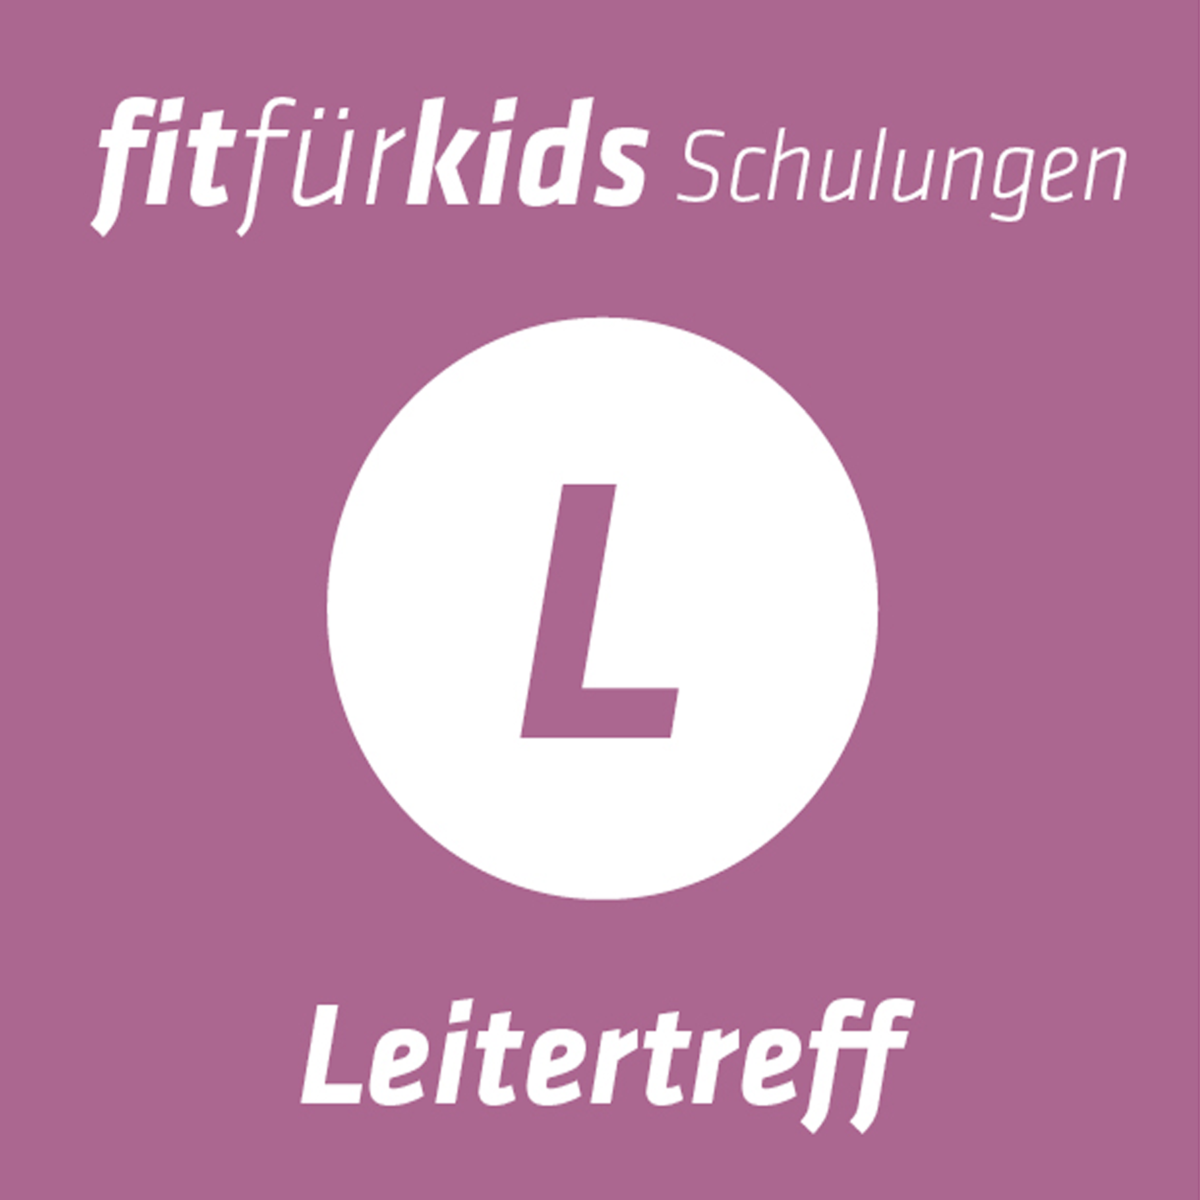 ffk_leitertreff